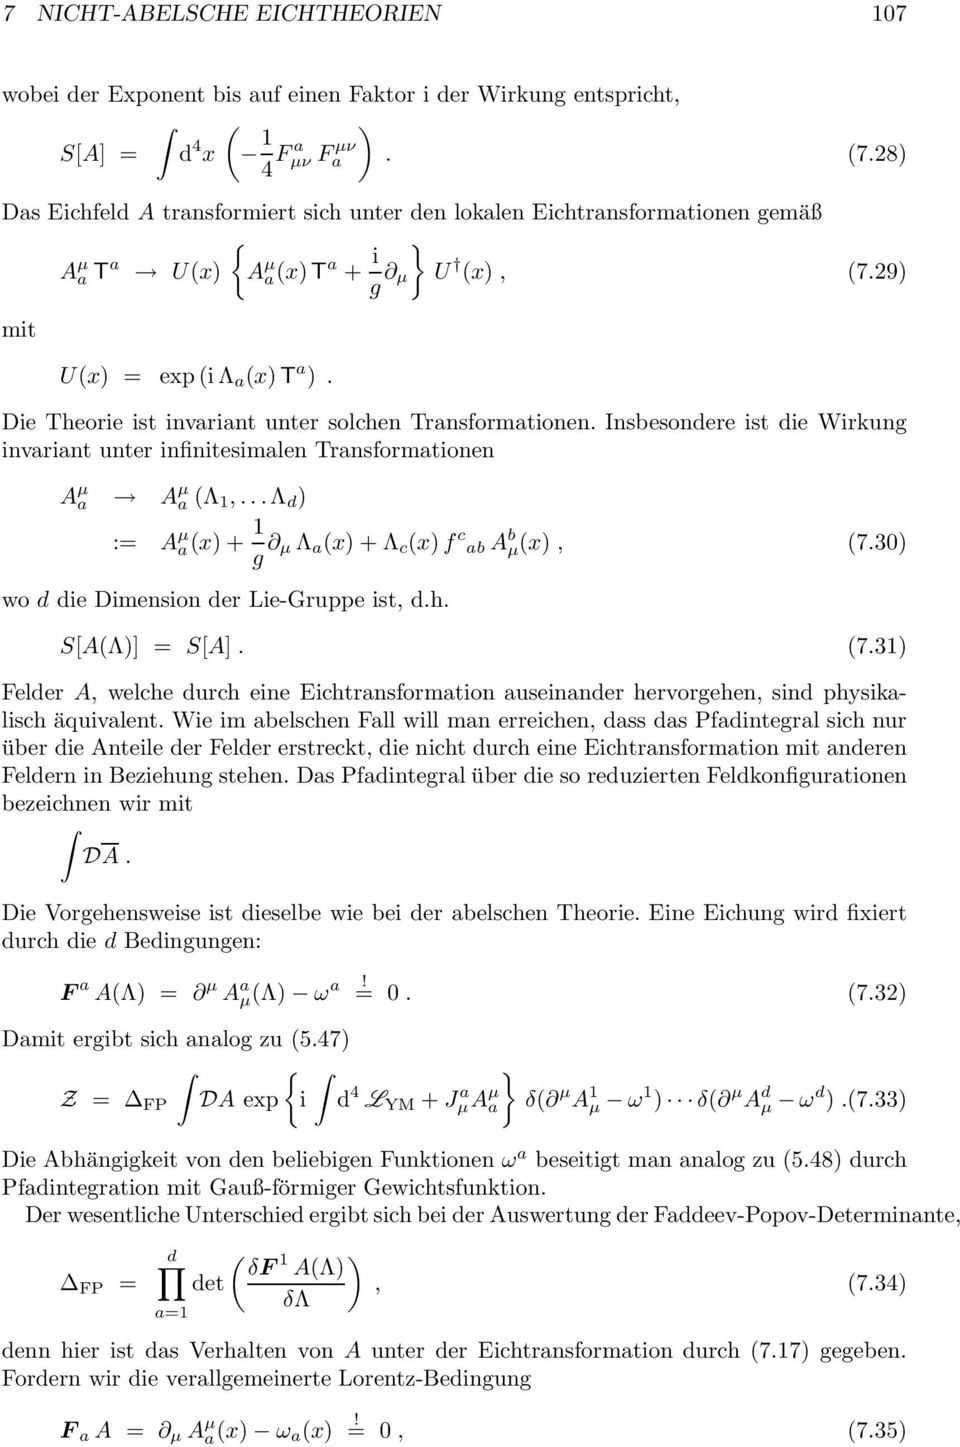 Die Theorie ist invrint unter solchen Trnsformtionen. Insbesondere ist die Wirkung invrint unter infinitesimlen Trnsformtionen A µ A µ (Λ 1,...Λ d ) = A µ (x) + 1 g µ Λ (x) + Λ c (x)f c b A b µ(x), (7.